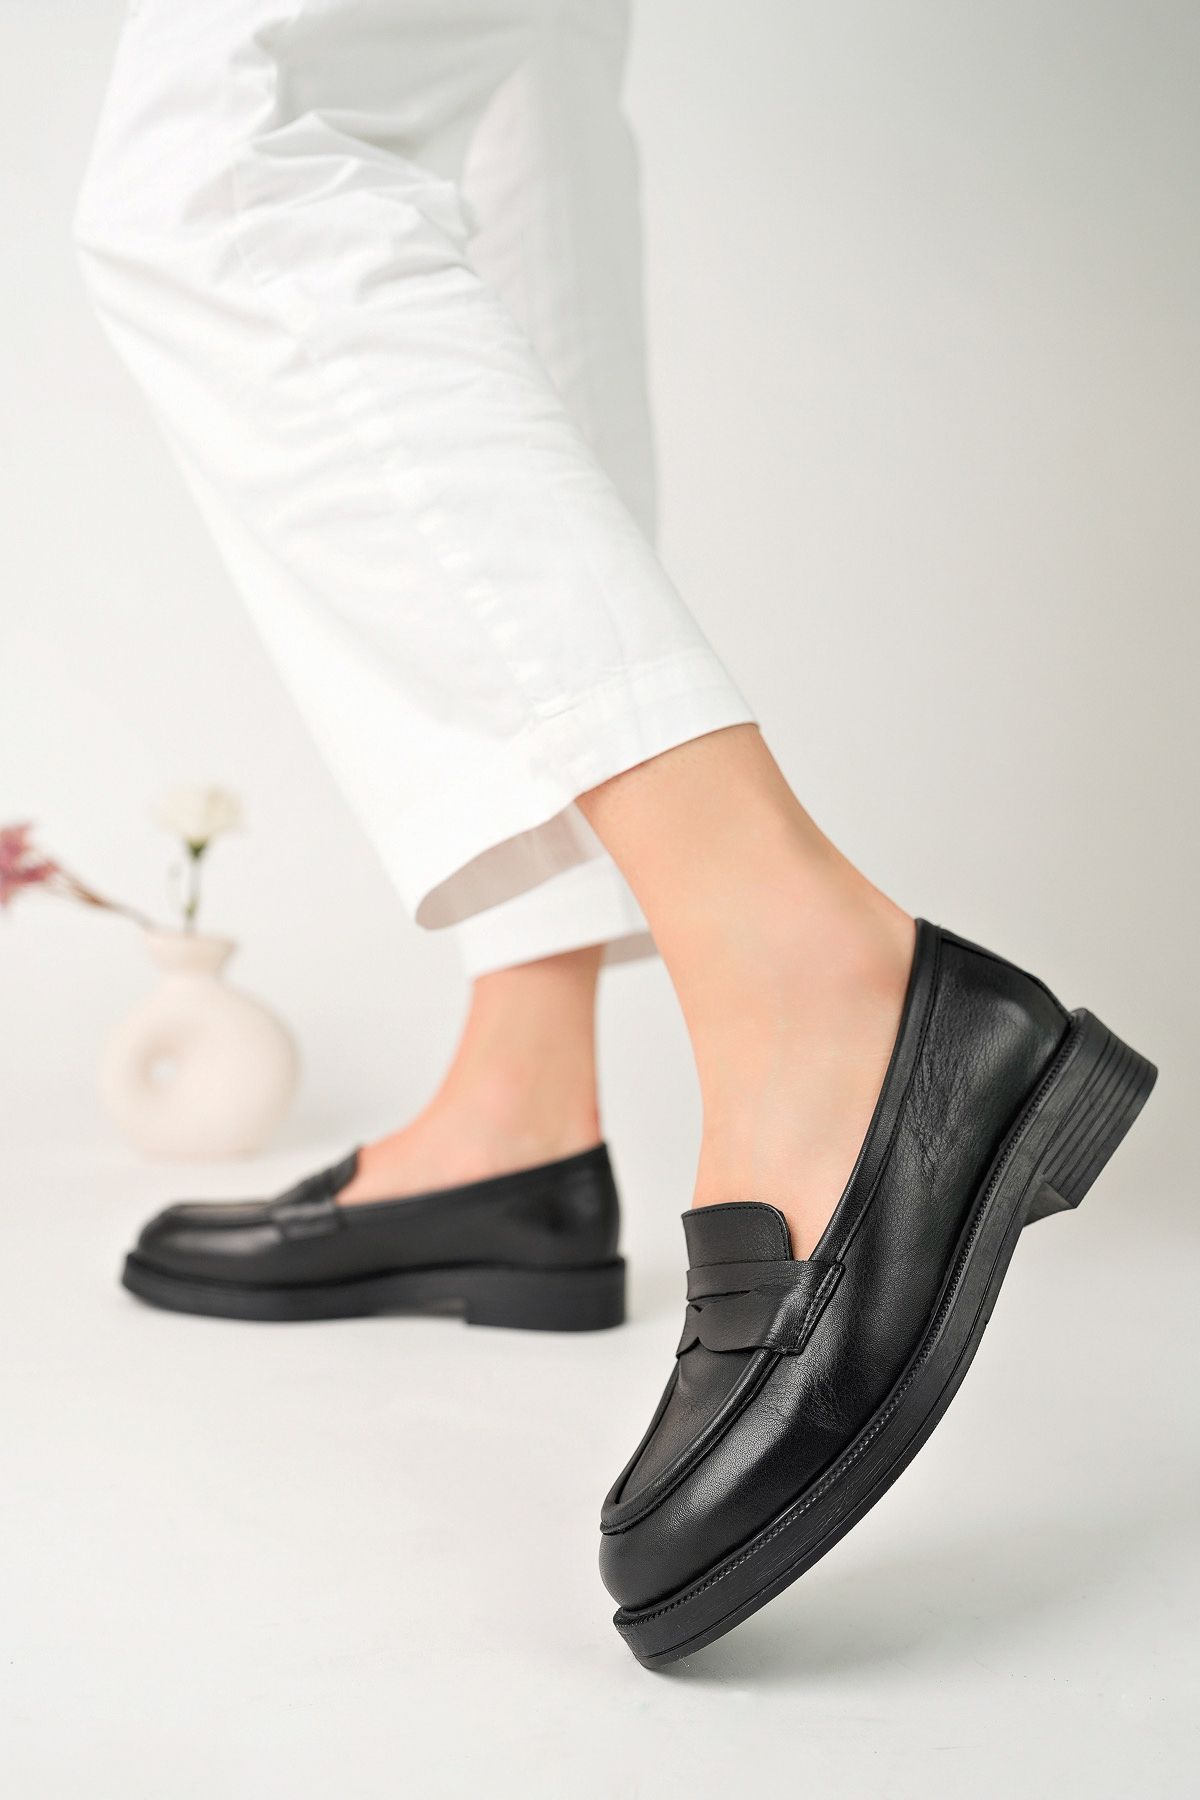 GNS Shoes Hakiki Deri Siyah Kadın Ayakkabısı Lofer